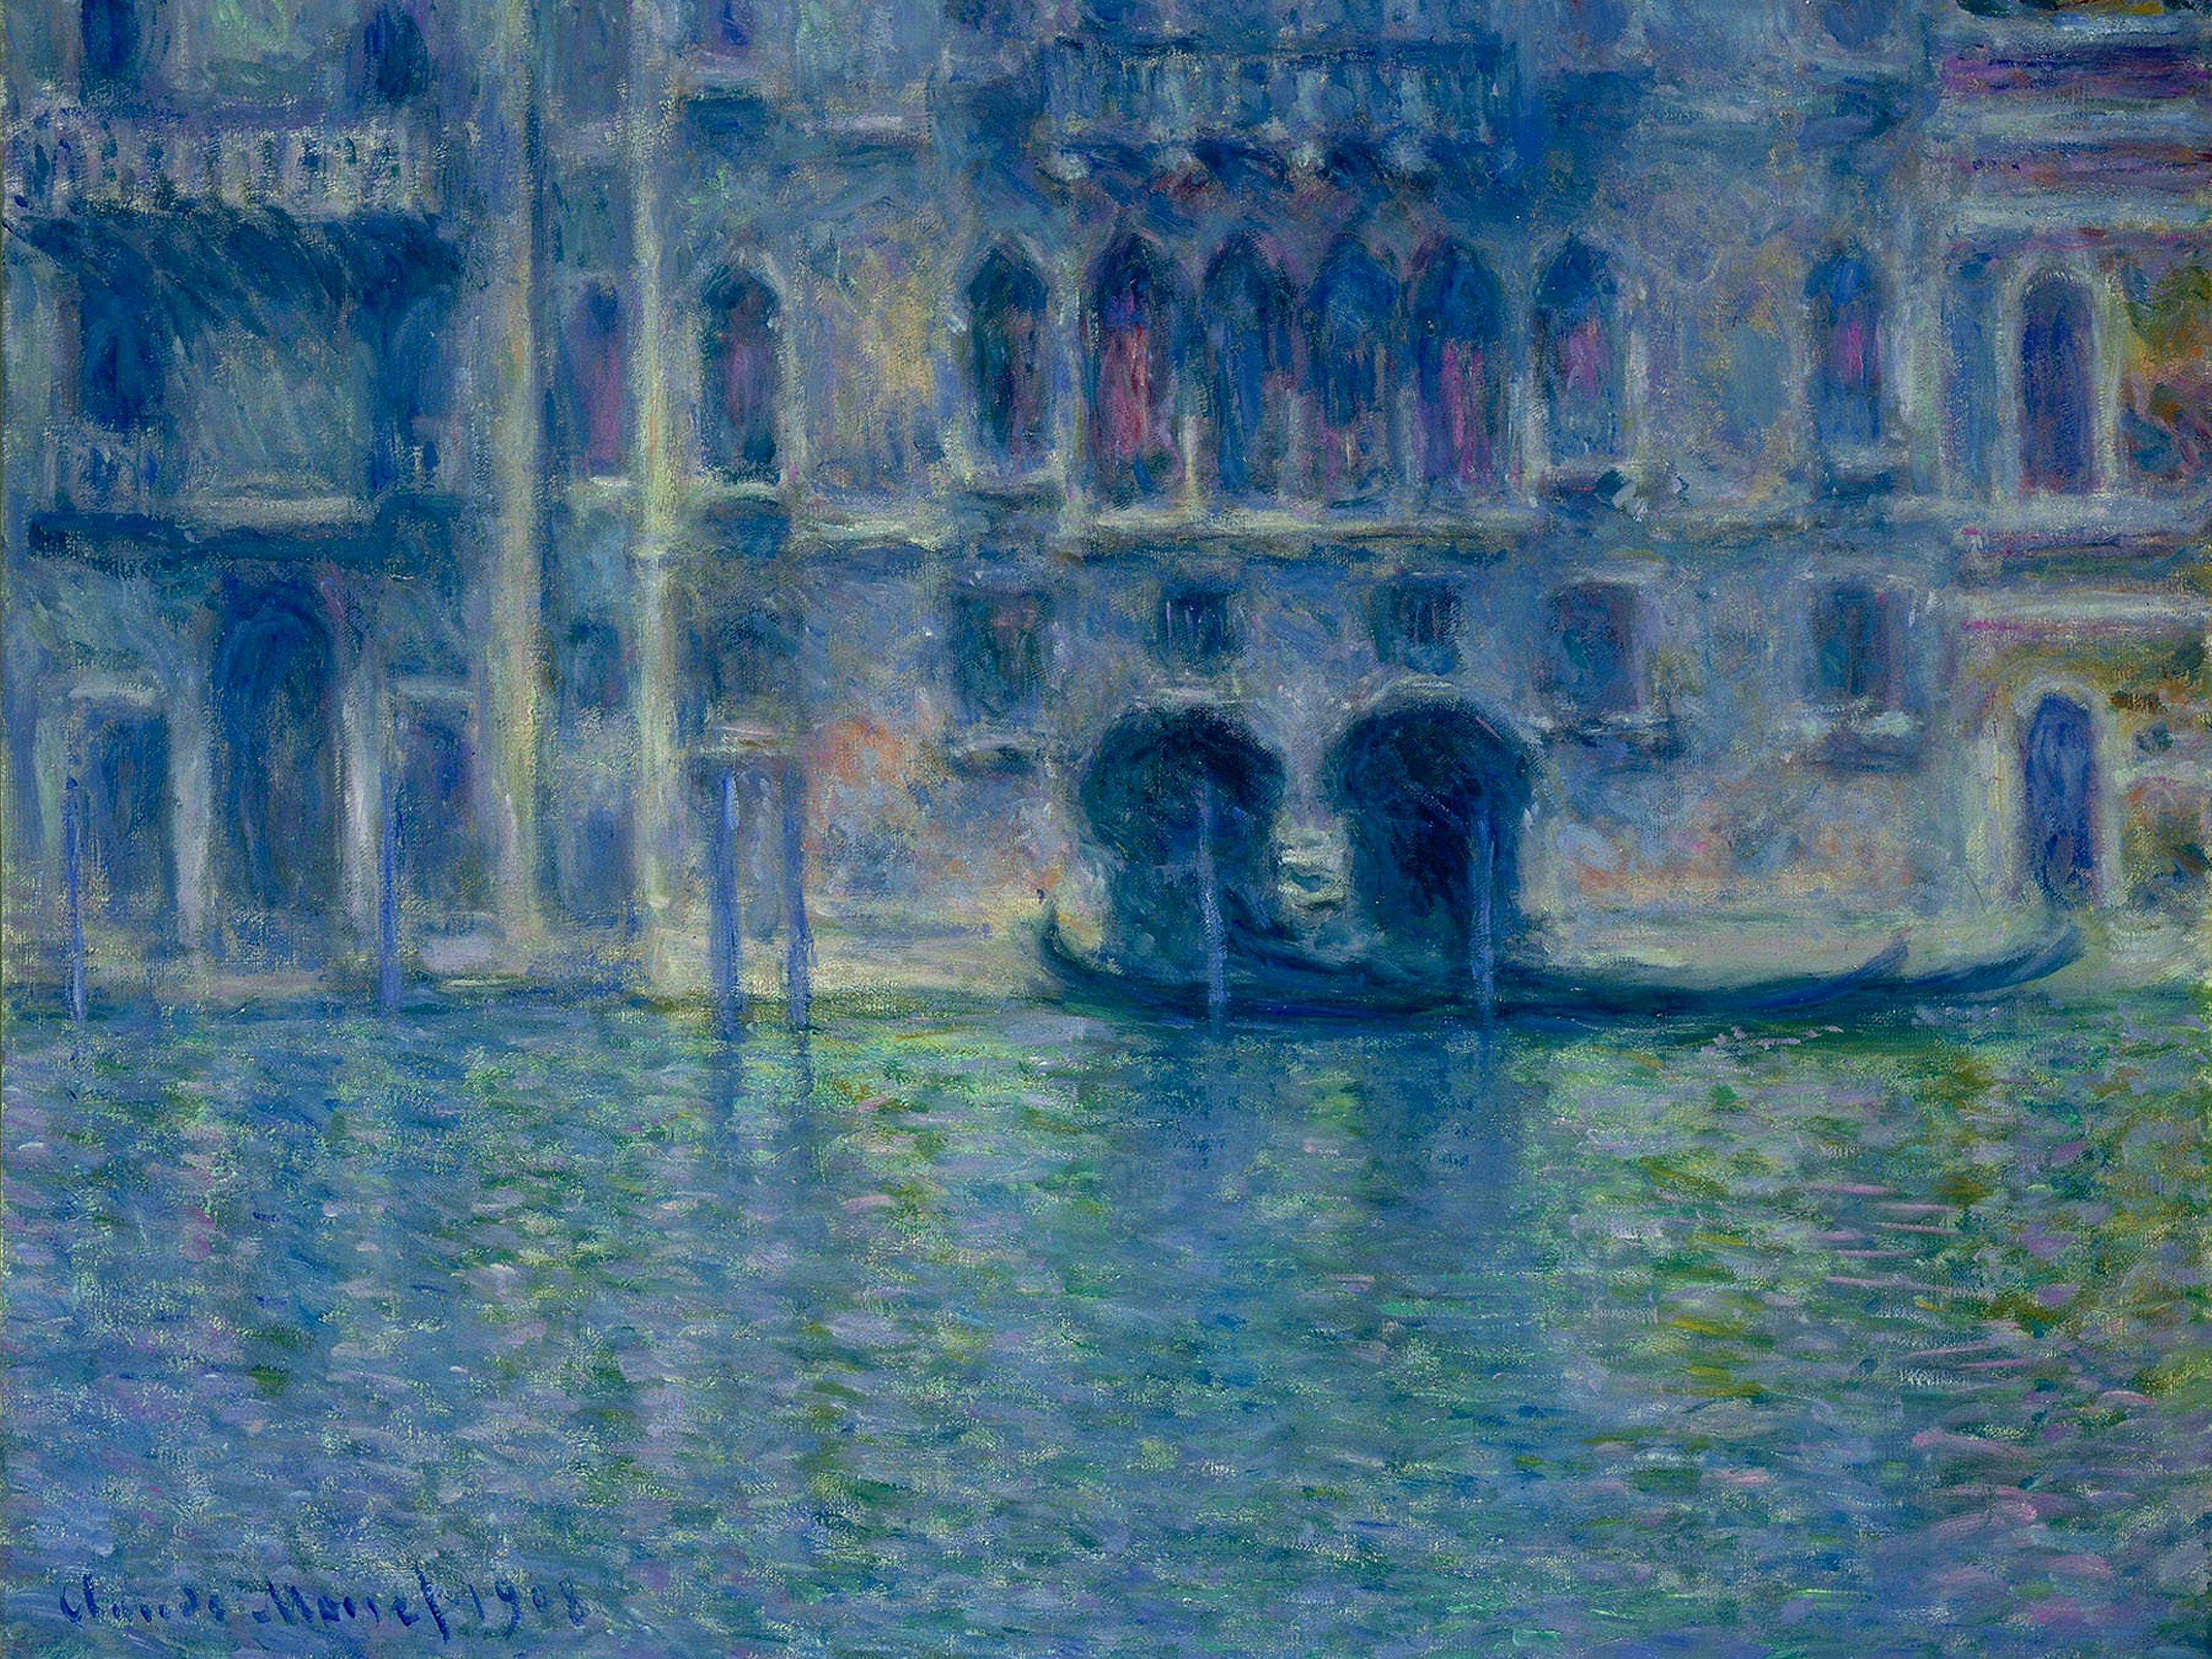 팔라쪼 다 물라, 베니스 by Claude Monet - 1908 - 61.4 x 80.5 cm 